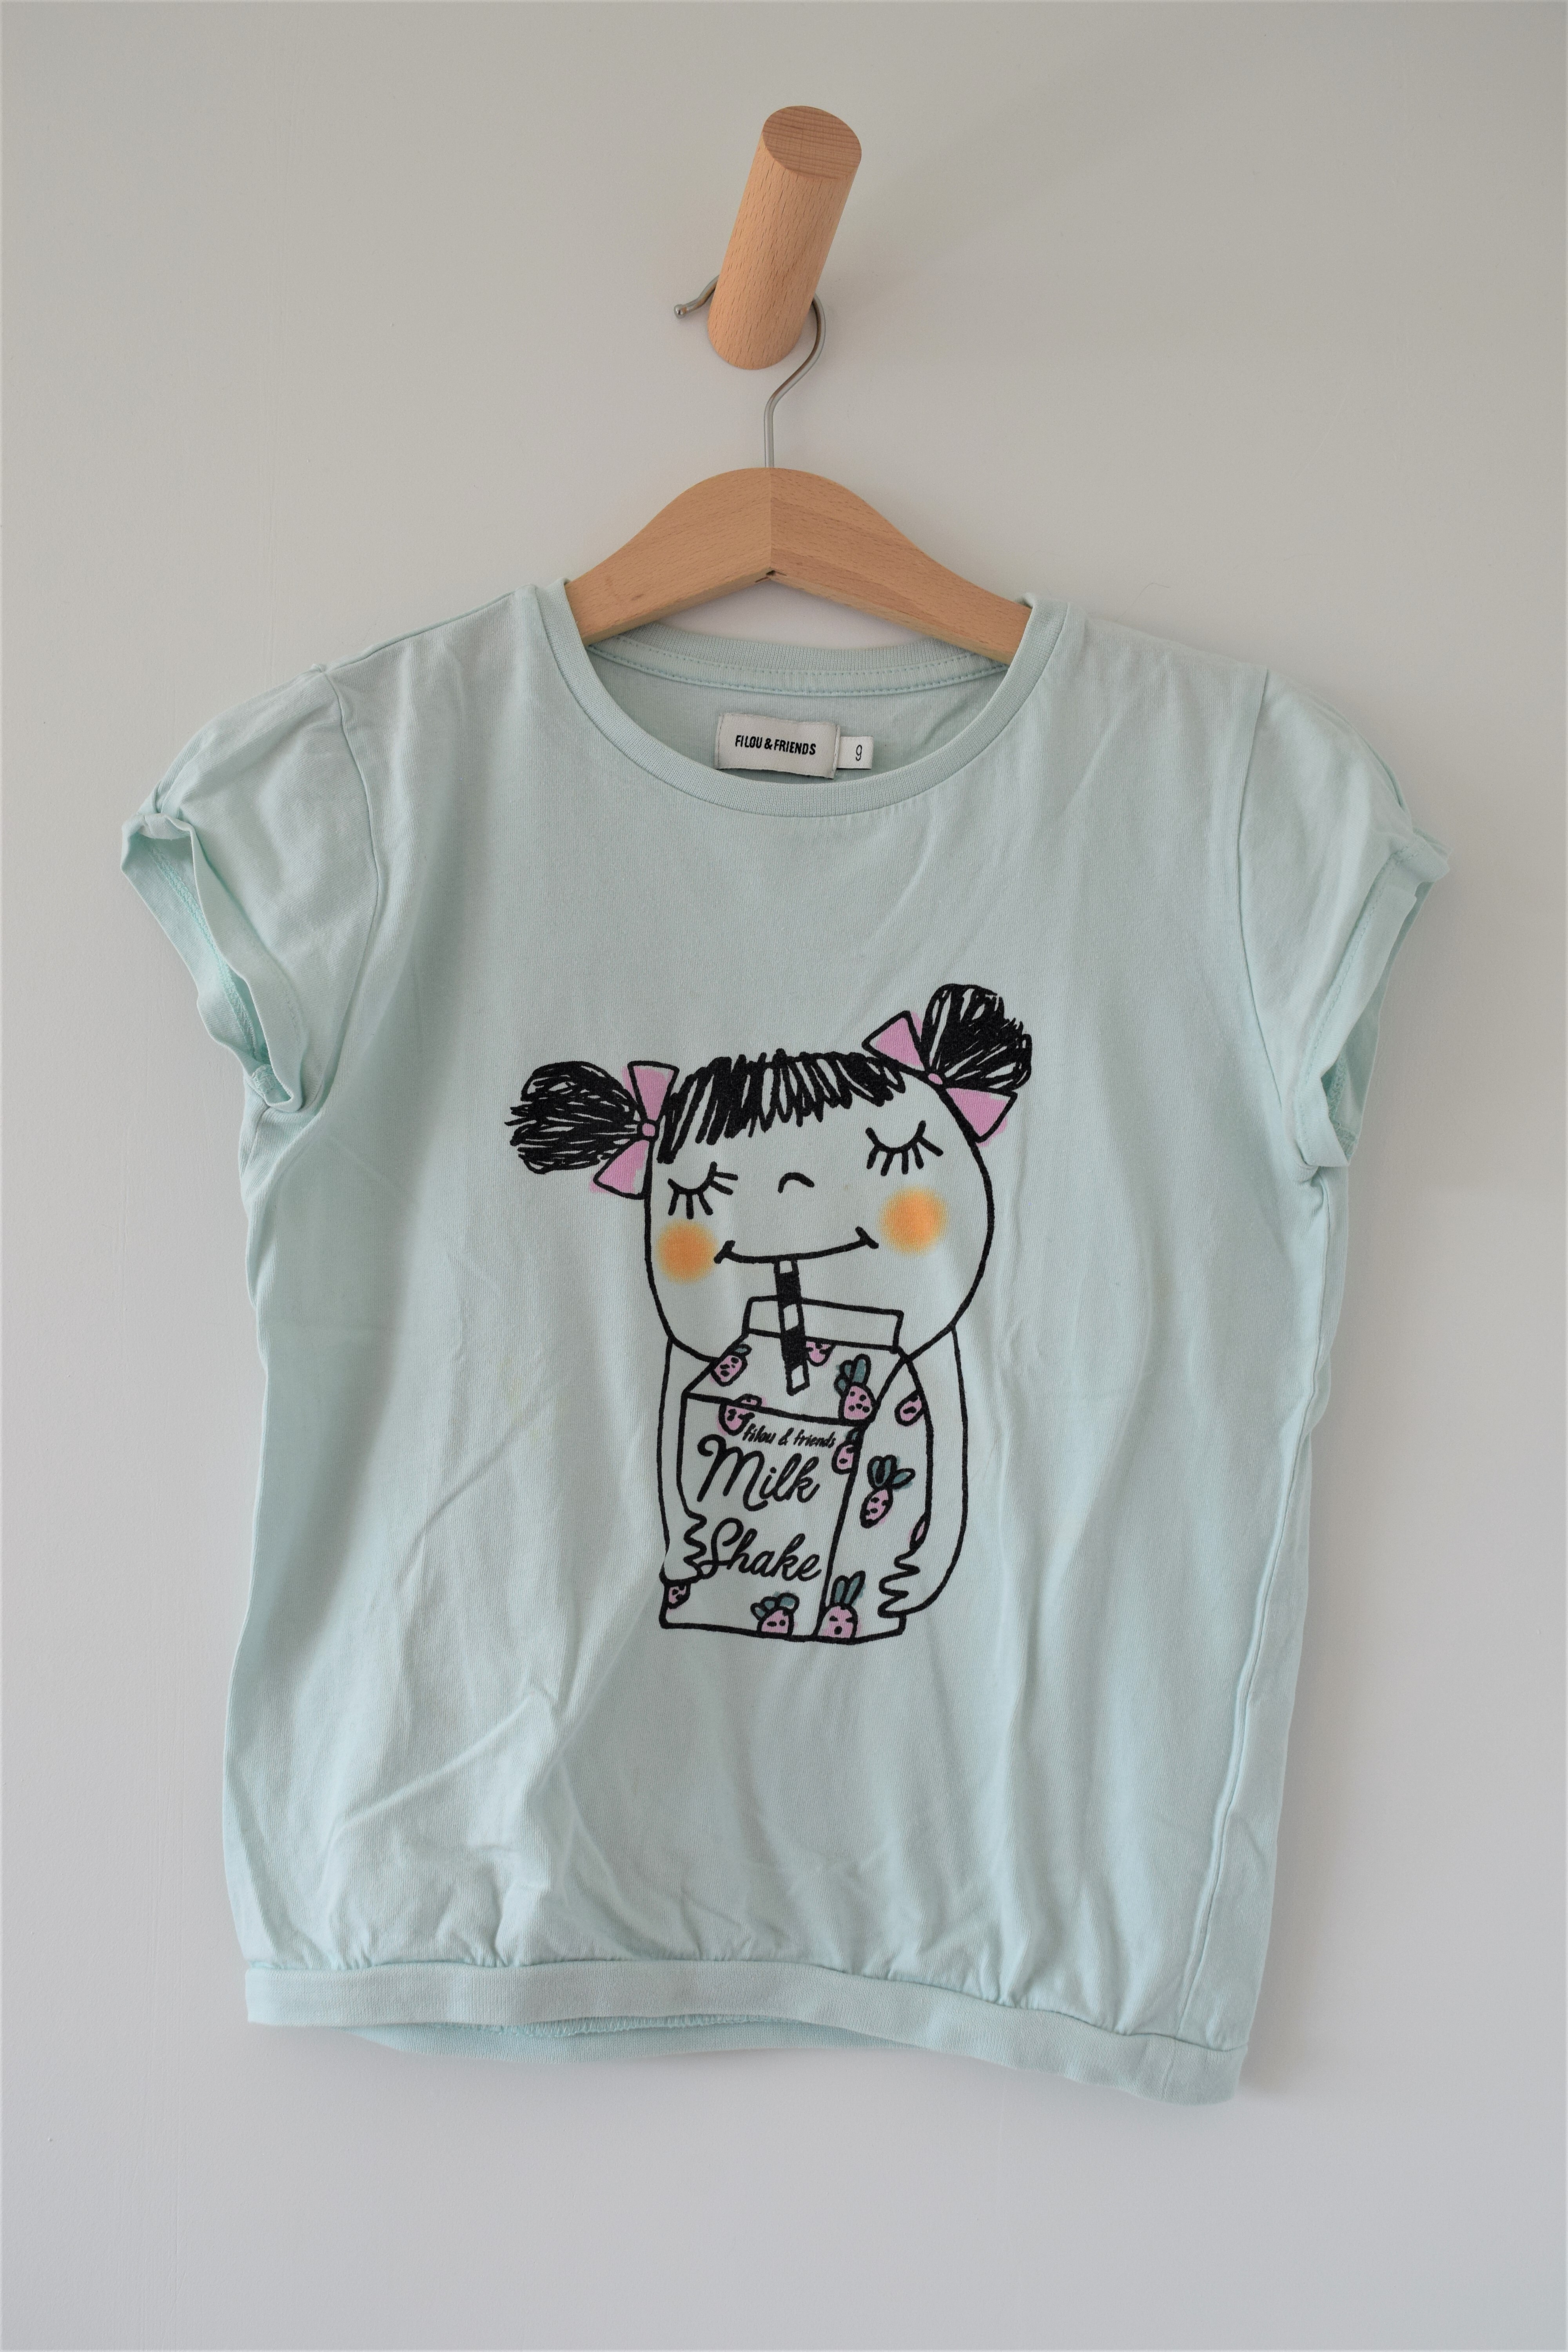 T-shirt, Filou & Friends, 9 jaar 